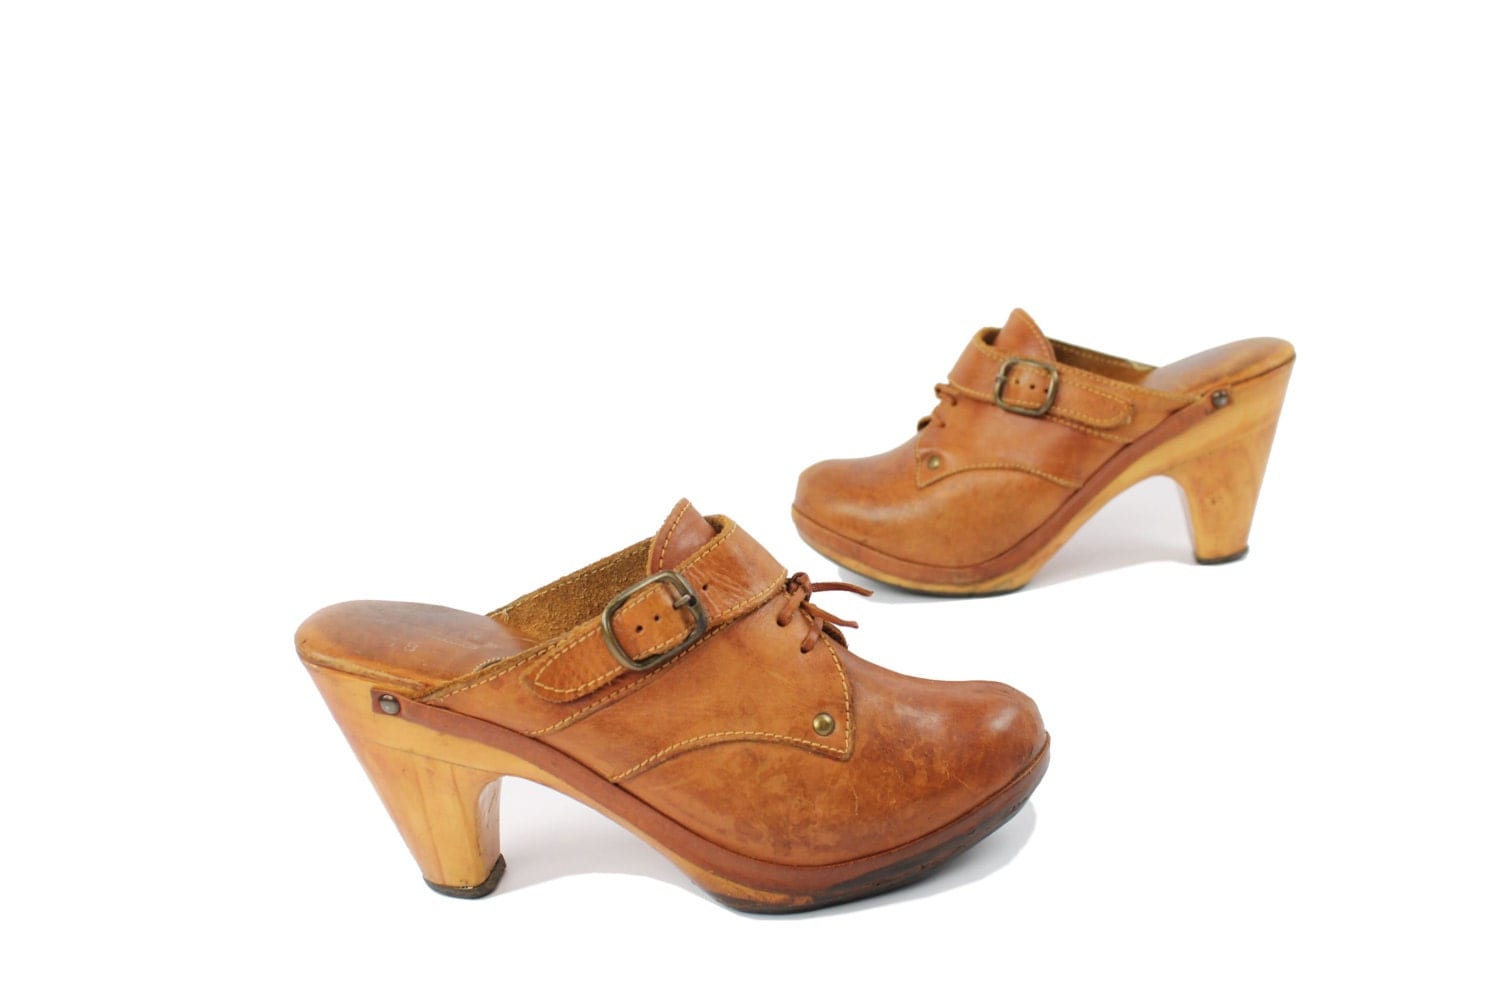 Vintage 70s Leather Clogs Mule Shoes Heels Pumps Womens